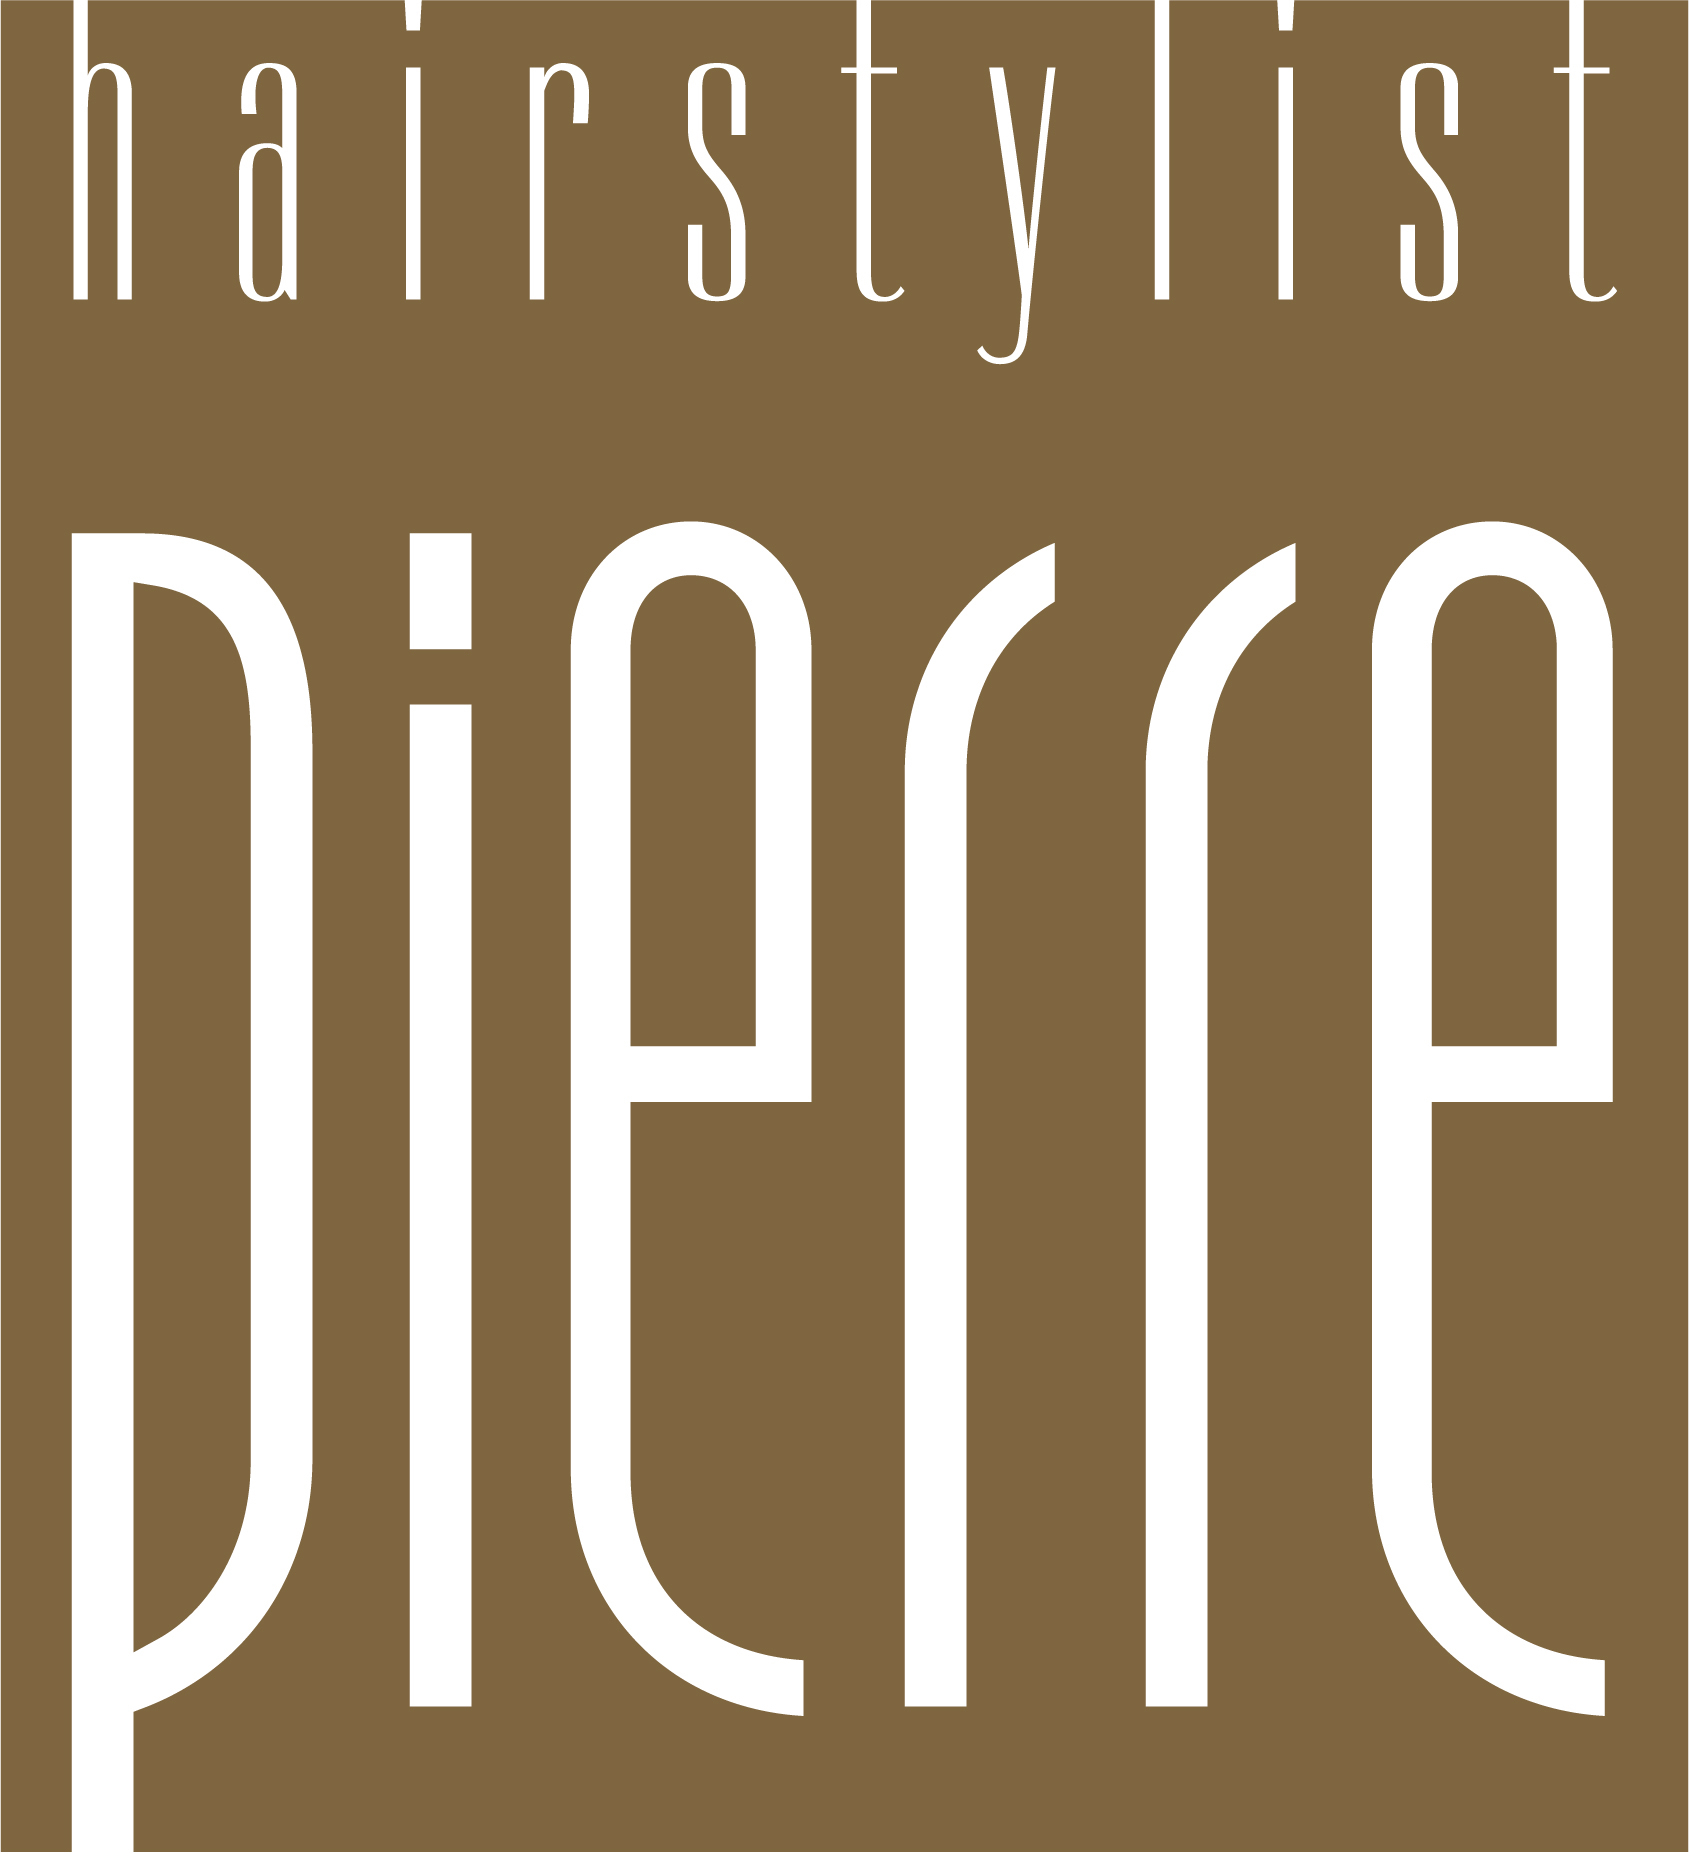 Logo: HAIRSTYLIST PIERRE